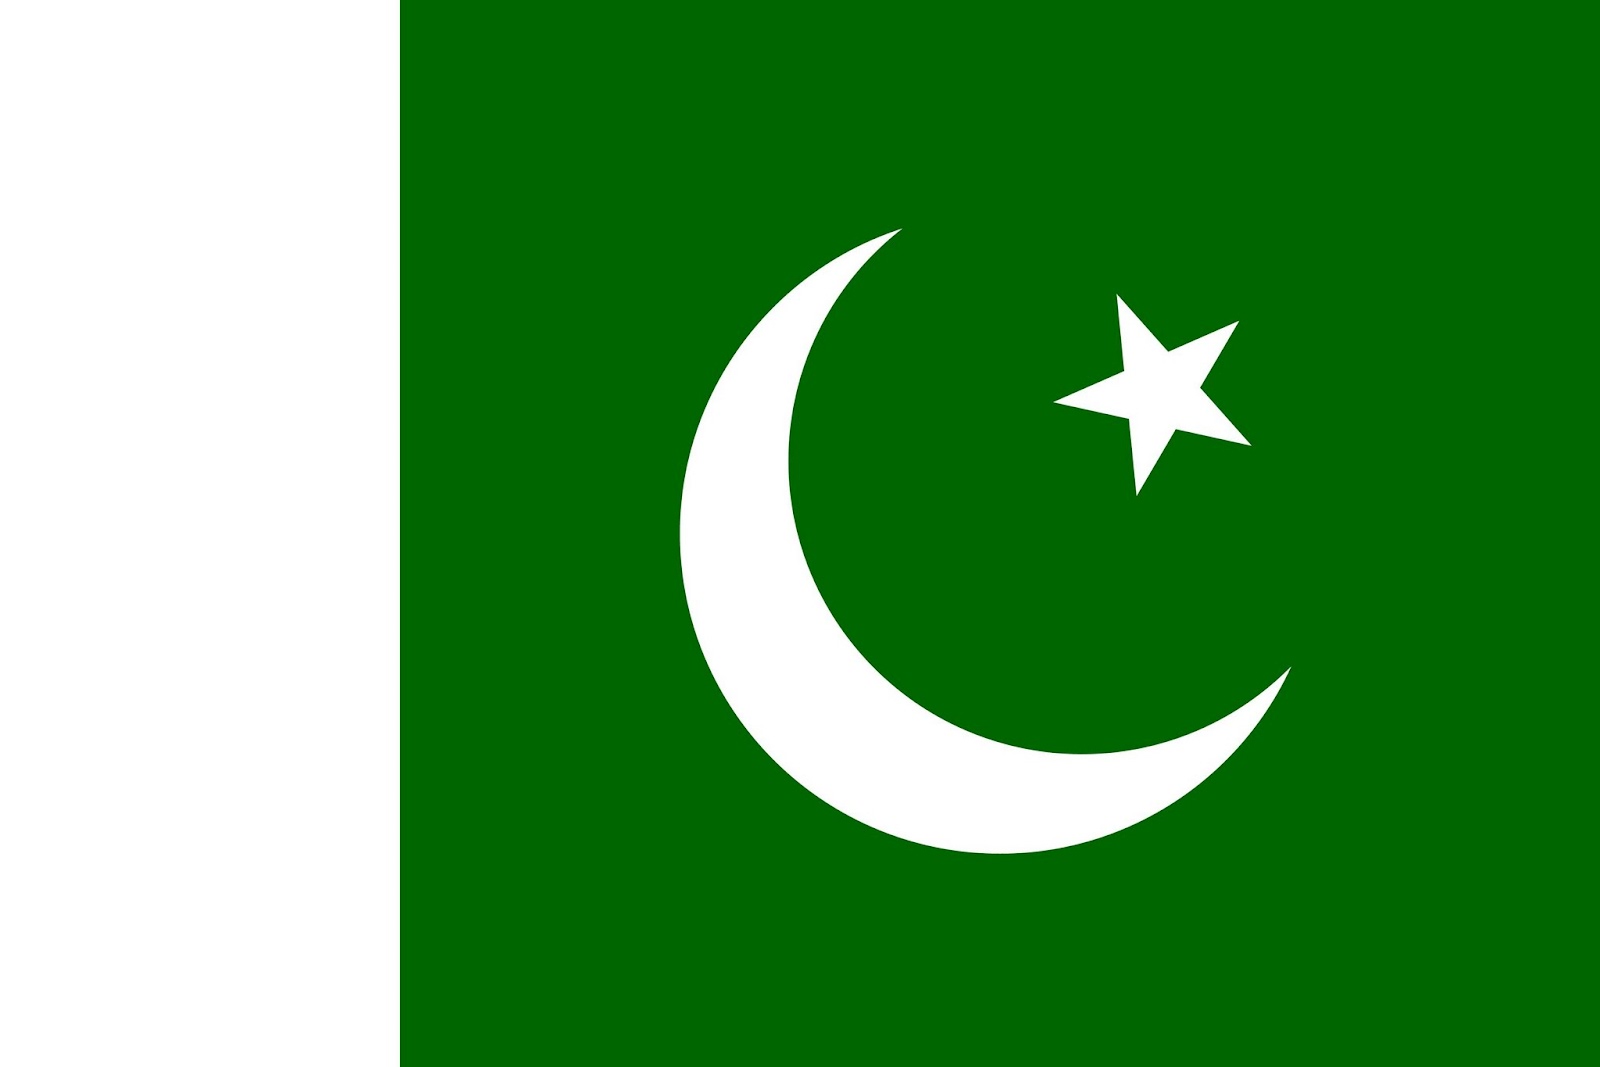 http://1.bp.blogspot.com/-0mNYGxEQbso/UBu5OiW875I/AAAAAAAAGzY/NOl9Y8NcUgo/s1600/Pakistan-Flags-Wallpapers-3750x2500-108.jpg